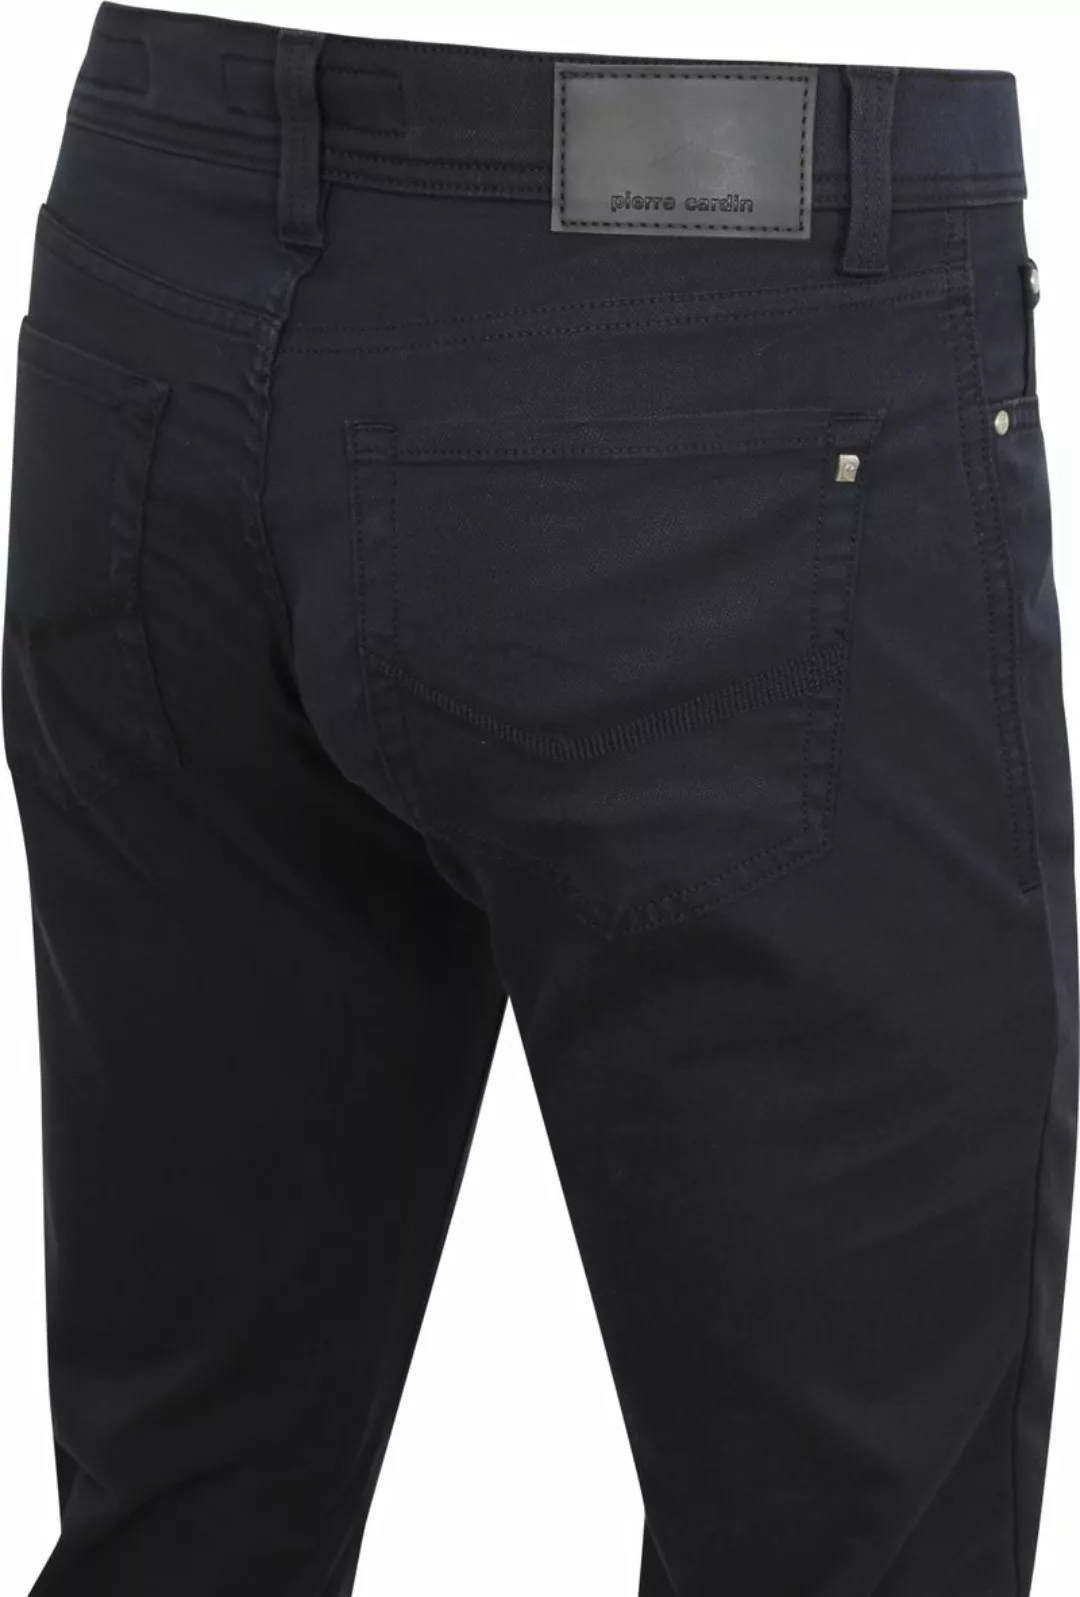 Pierre Cardin Jeans Zukunft Flex Anthrazit - Größe W 38 - L 36 günstig online kaufen